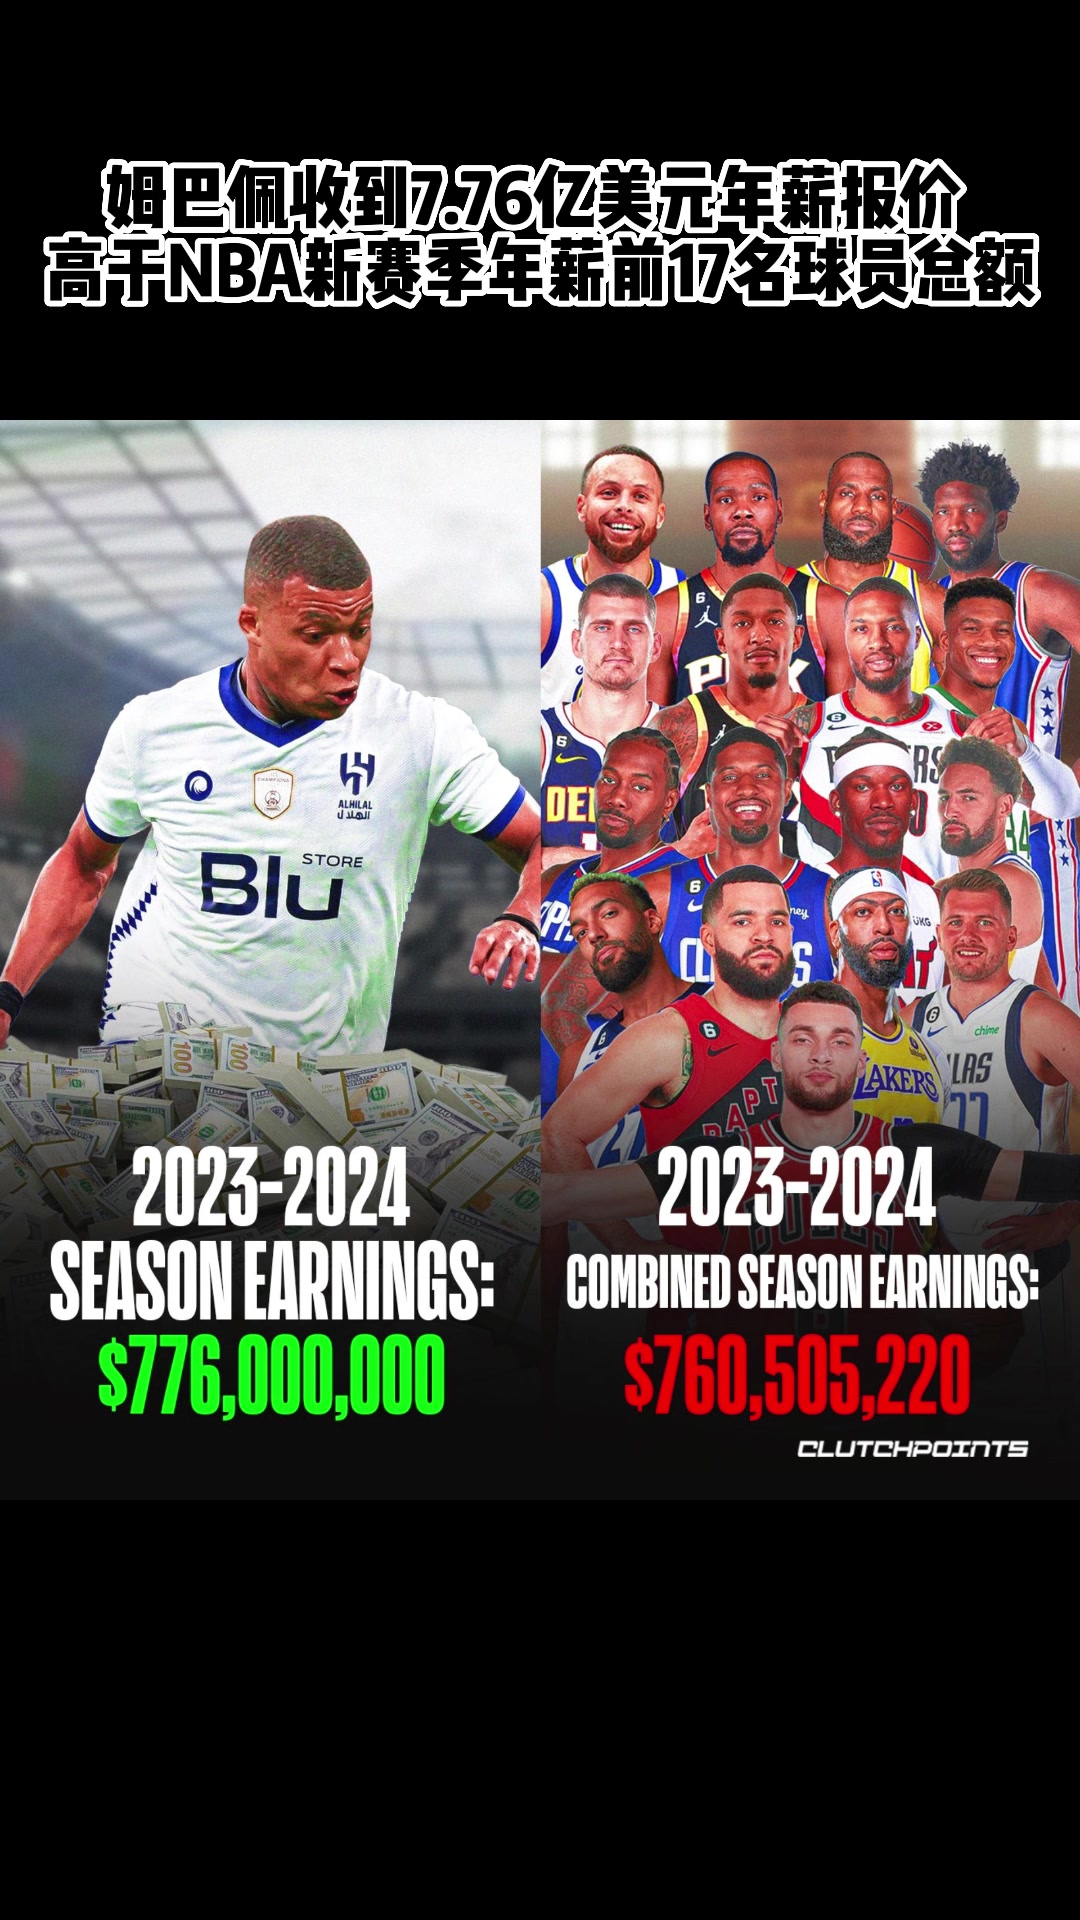 姆巴佩收到7.76亿美元年薪报价 高于NBA新赛季年薪前17名球员总额